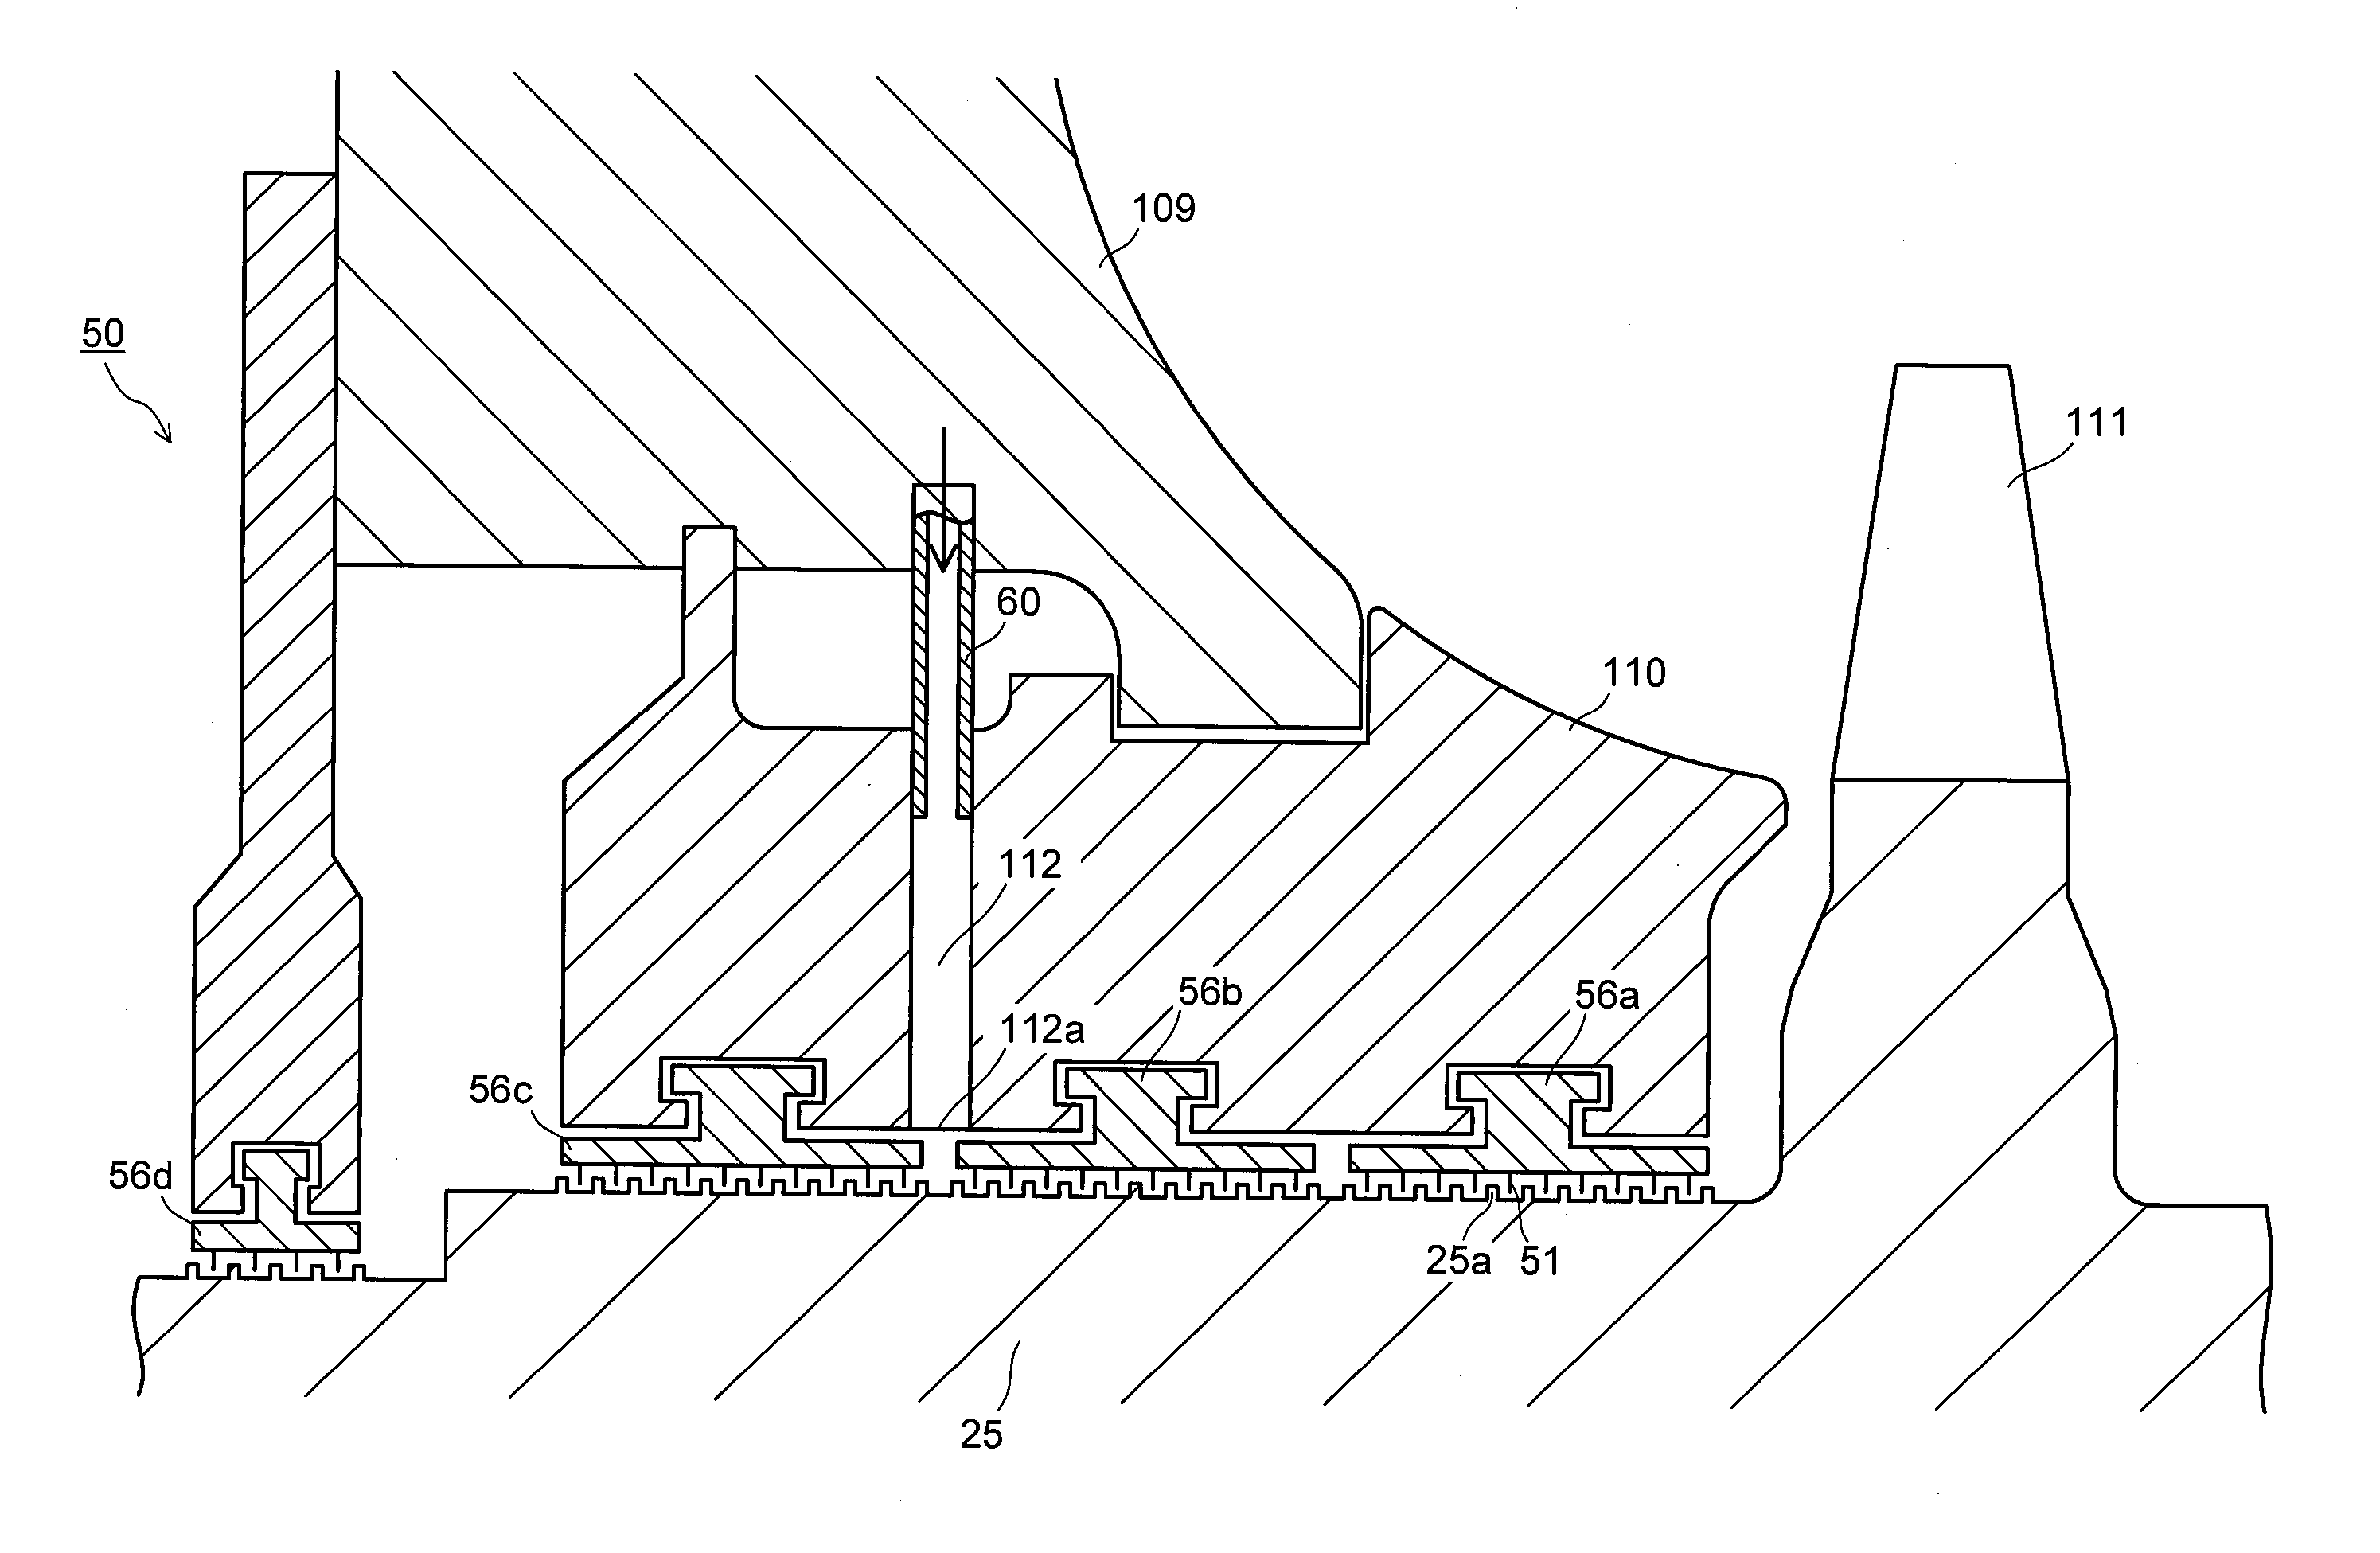 Steam turbine and method of cooling steam turbine